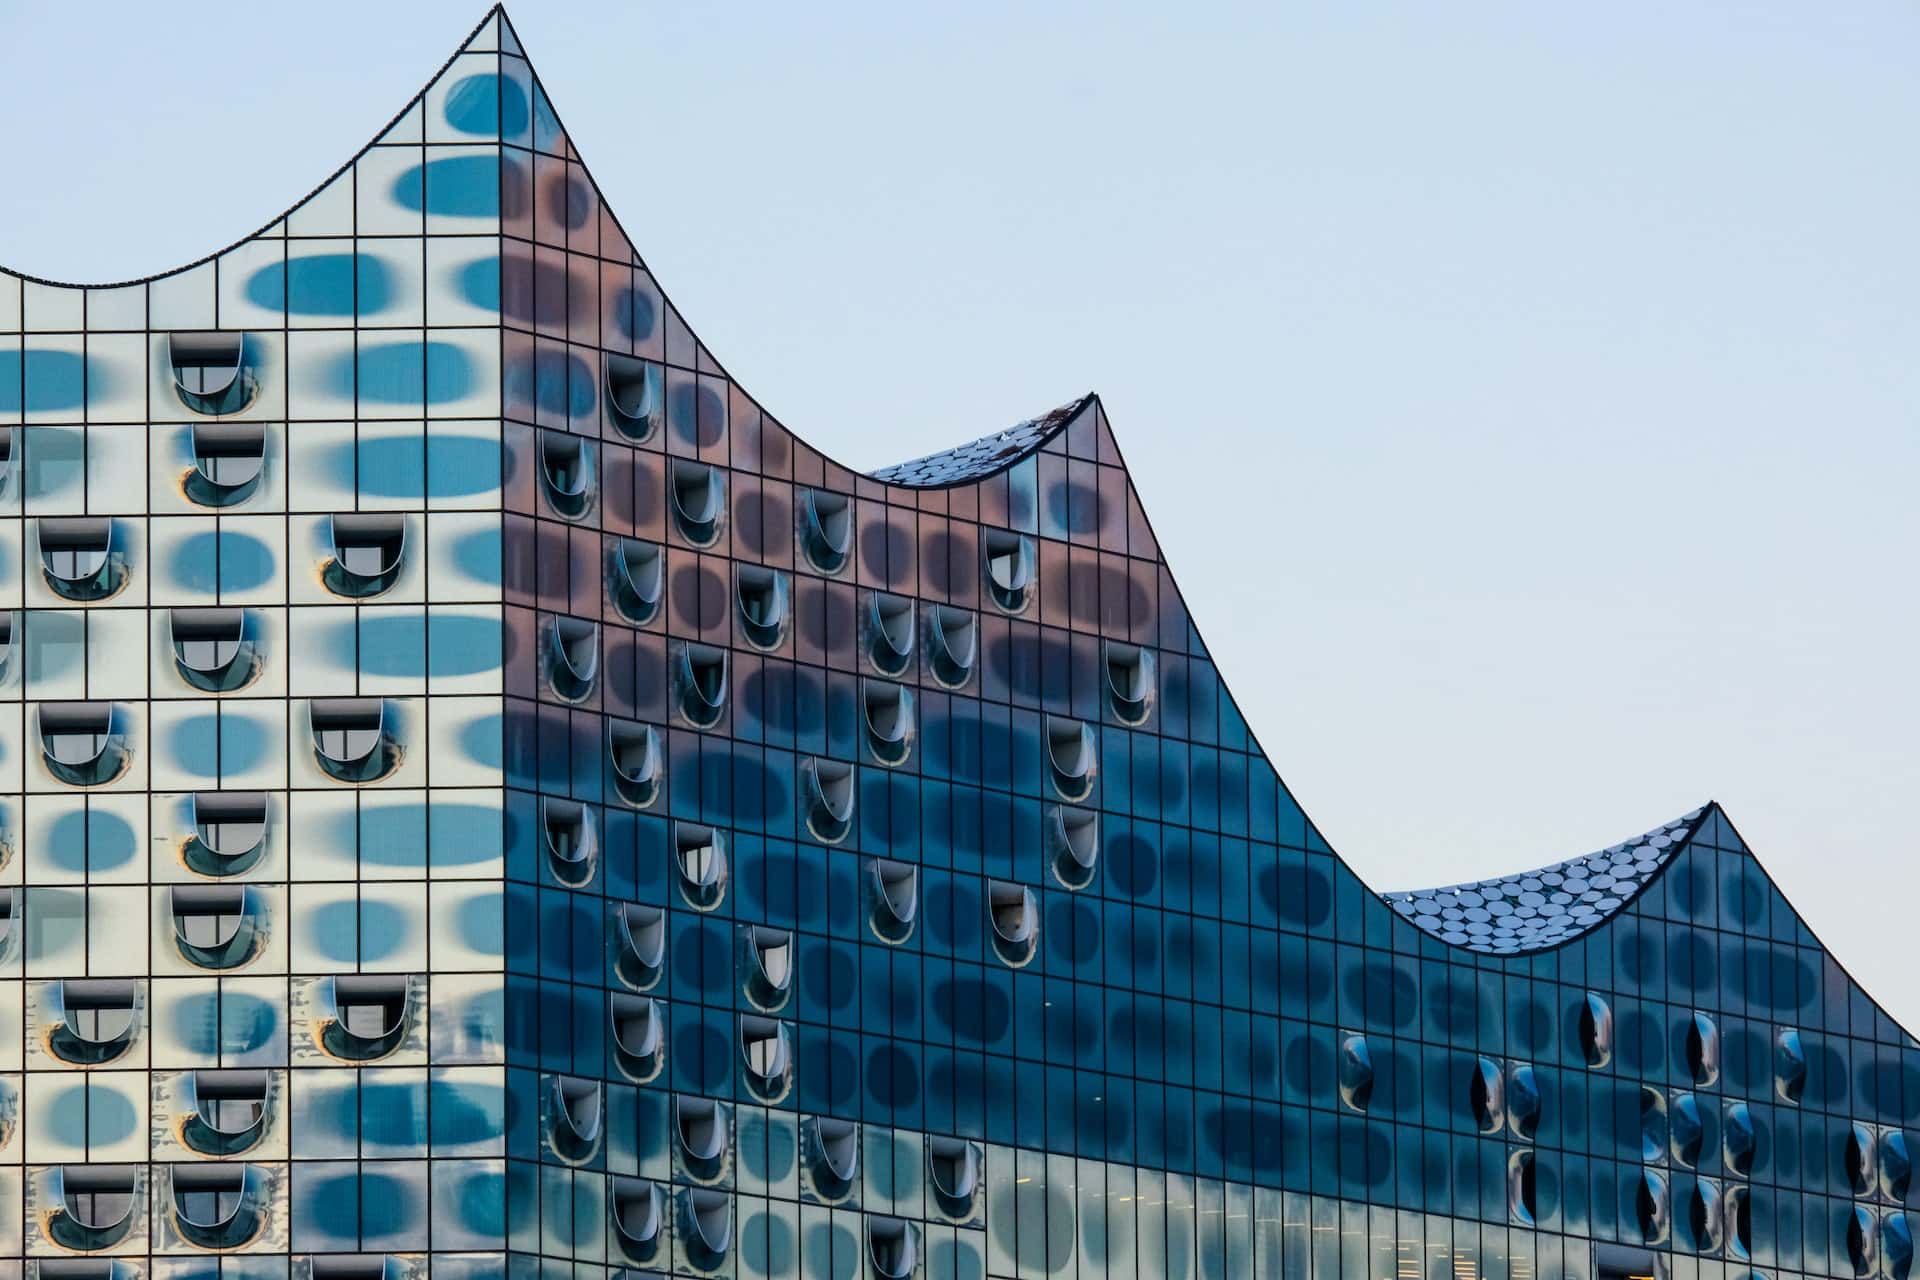 Sede della Elbphilharmonie Hamburg, HafenCity è un quartiere recentemente rivitalizzato e ricco di architettura moderna.